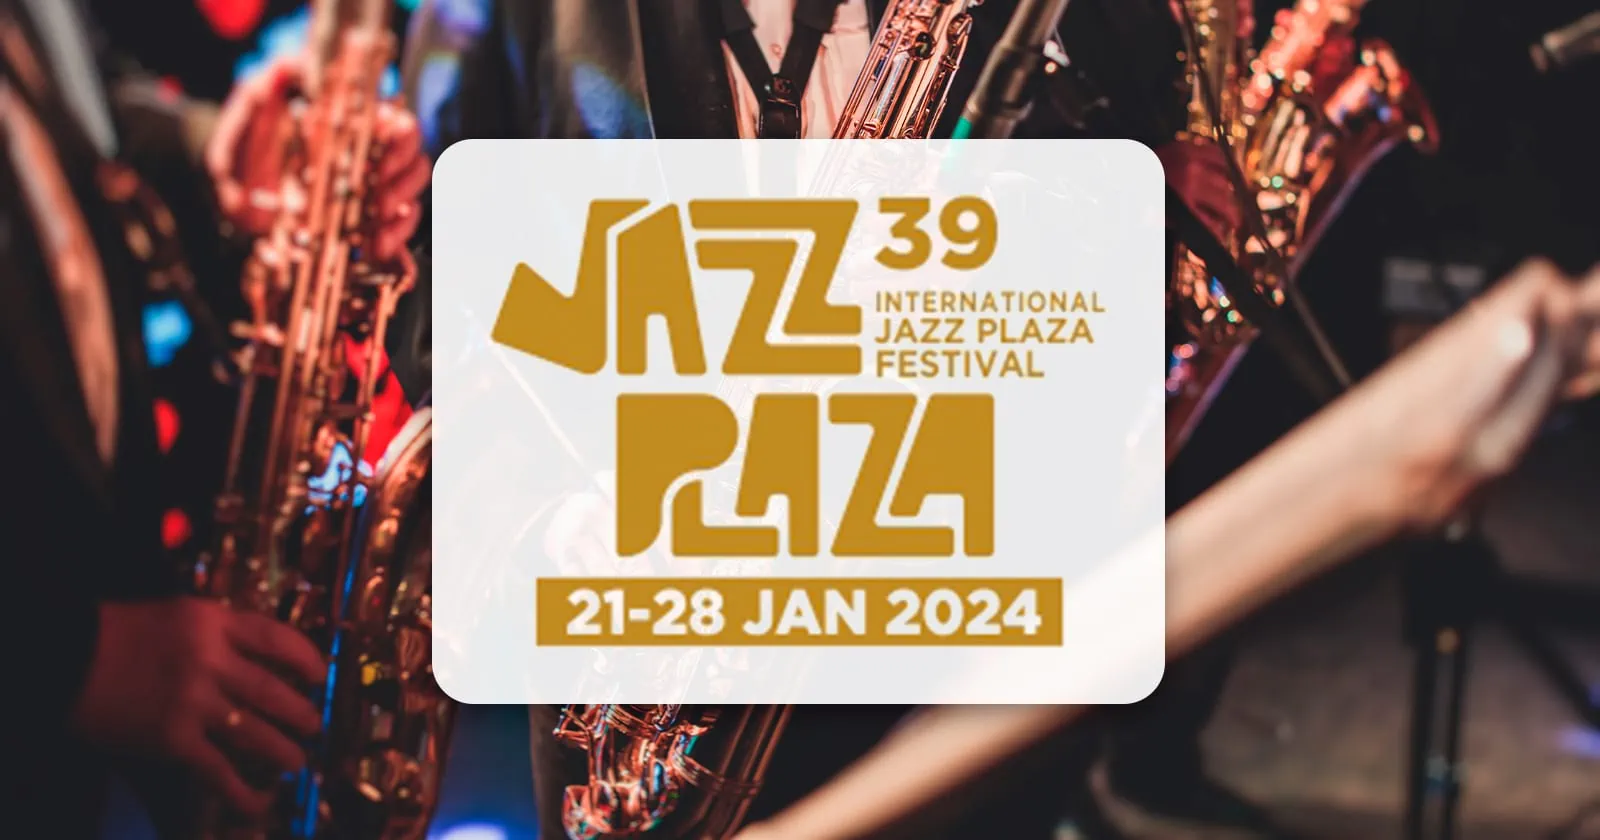 Inicia Festival Internacional Jazz Plaza en La Habana y Santiago de Cuba